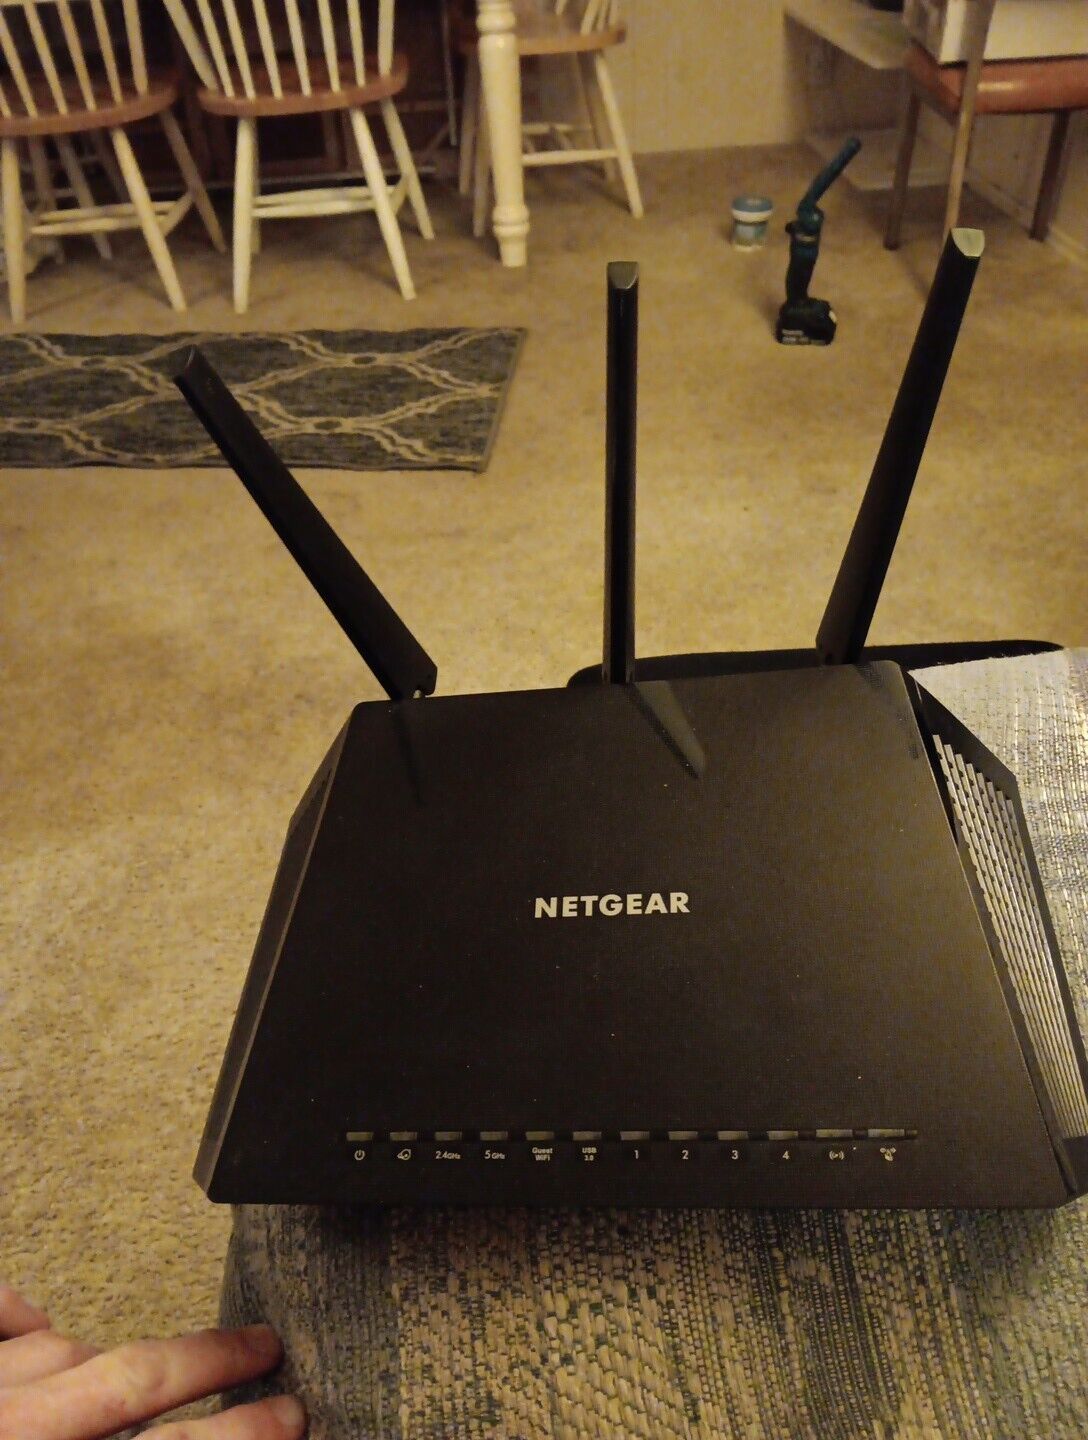 NETGEAR Nighthawk AC1900 model R6900 Smart WiFi Router